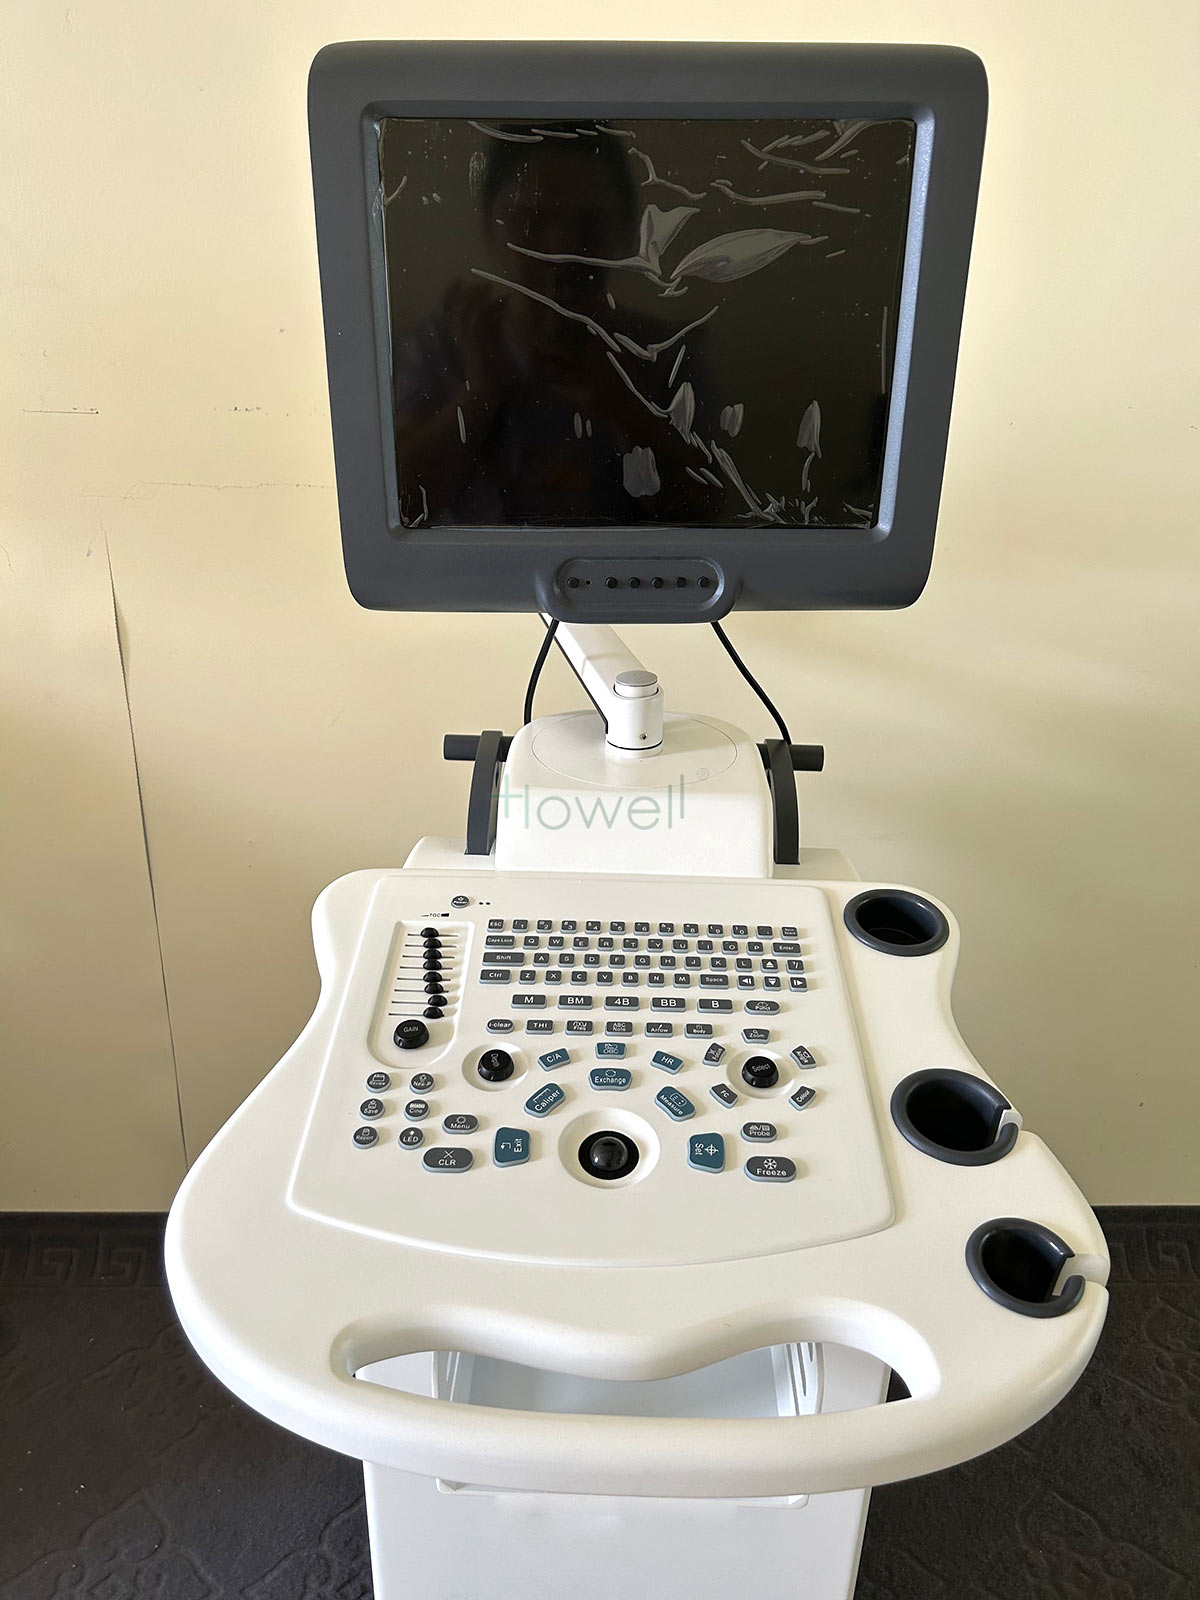 Trolley အနက်ရောင်နှင့်အဖြူရောင် Ultrasound